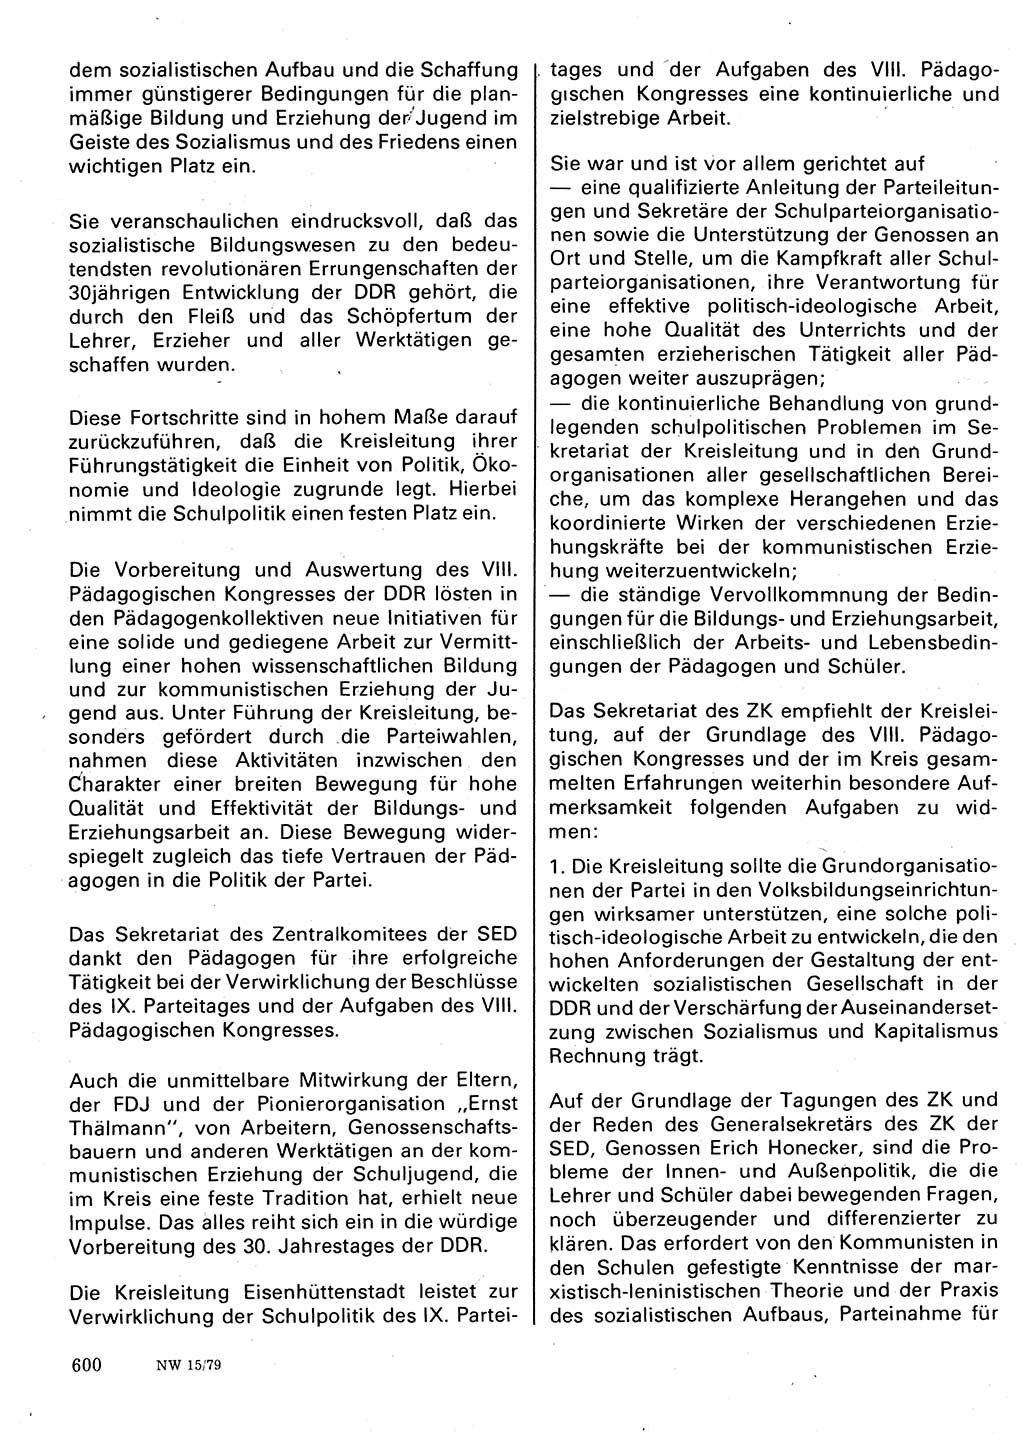 Neuer Weg (NW), Organ des Zentralkomitees (ZK) der SED (Sozialistische Einheitspartei Deutschlands) für Fragen des Parteilebens, 34. Jahrgang [Deutsche Demokratische Republik (DDR)] 1979, Seite 600 (NW ZK SED DDR 1979, S. 600)